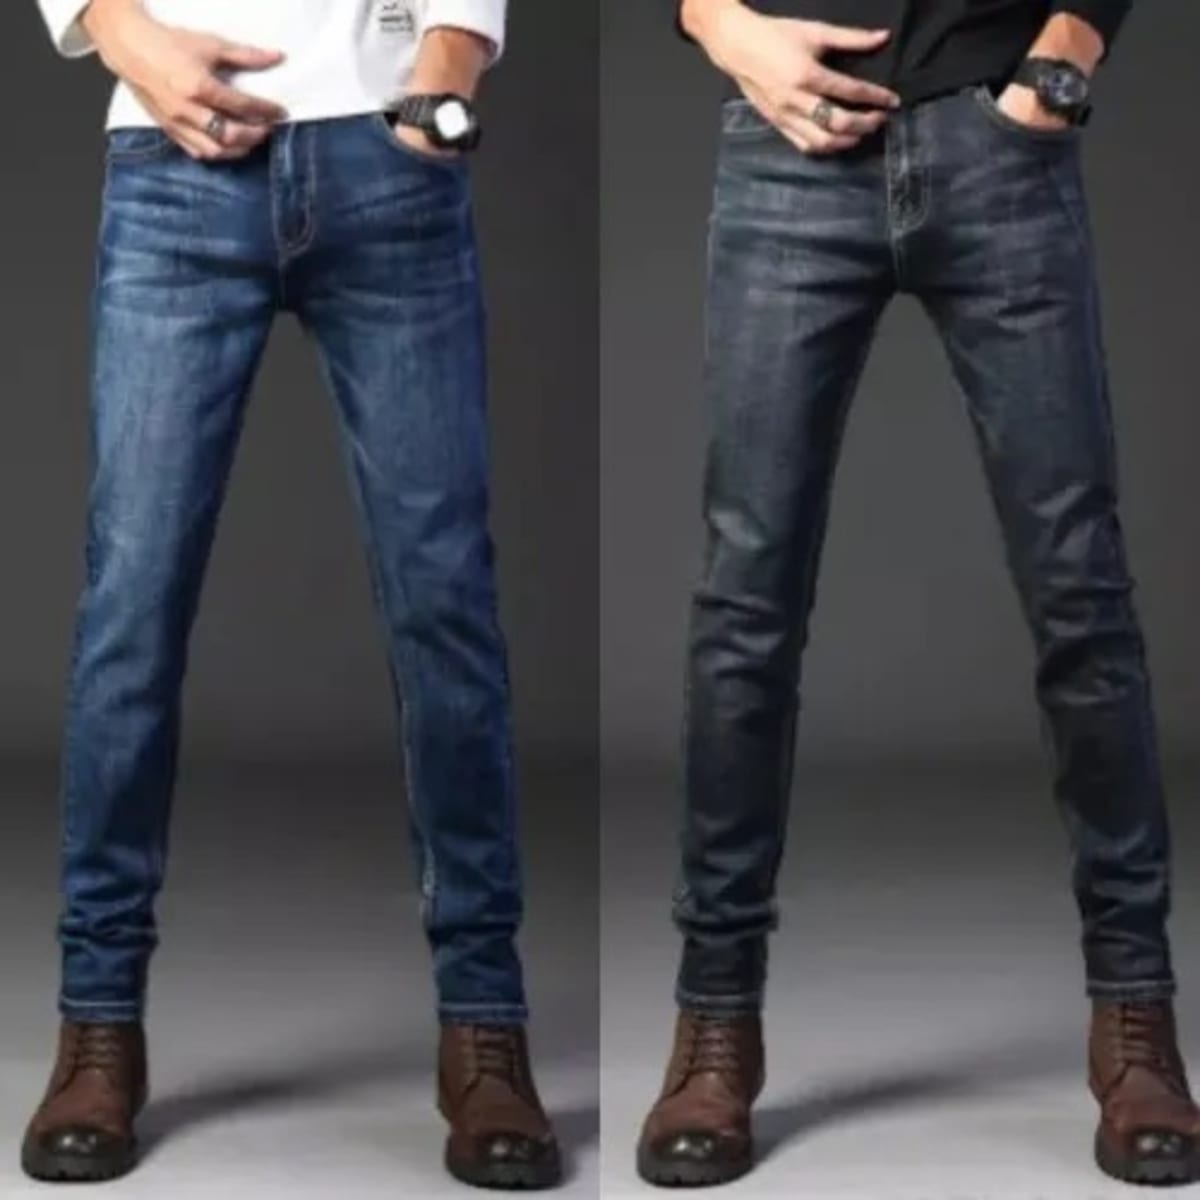 Men's blue jeans, Shop denim fashion online